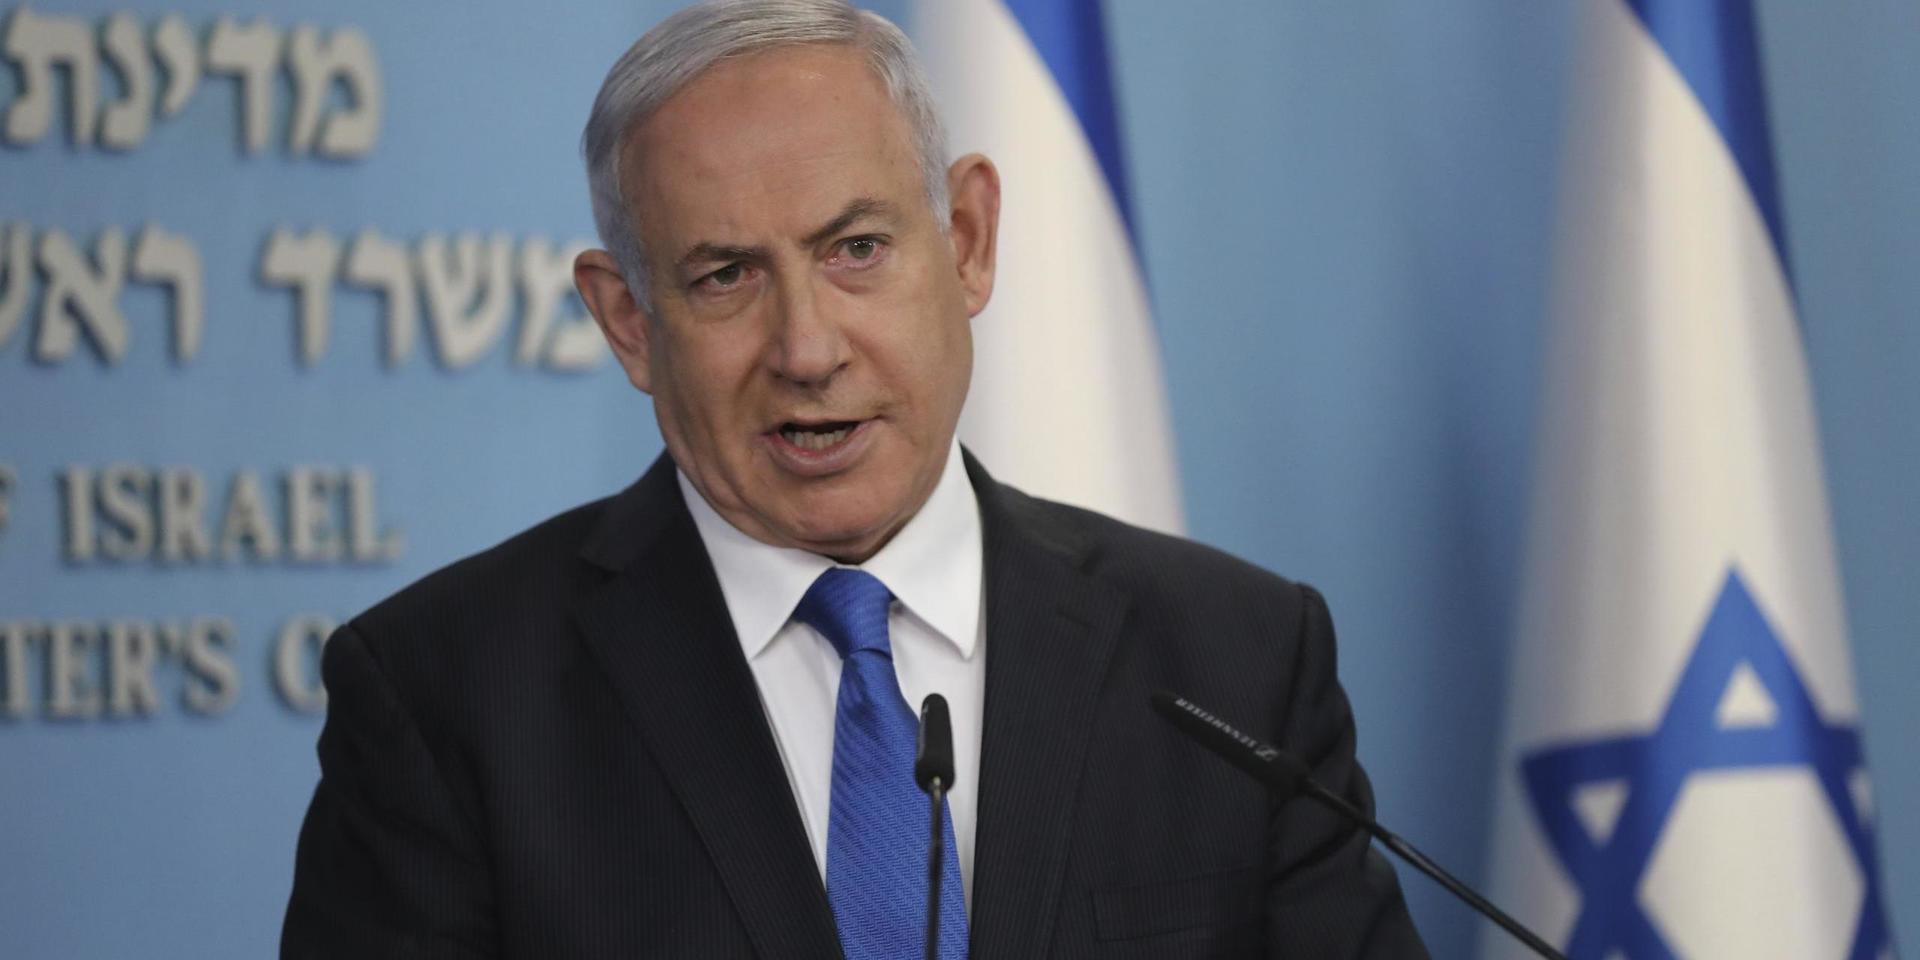 Israels premiärminister Benjamin Netanyahu visar på nytt sin förmåga när det gäller strategi och utrikespolitik.